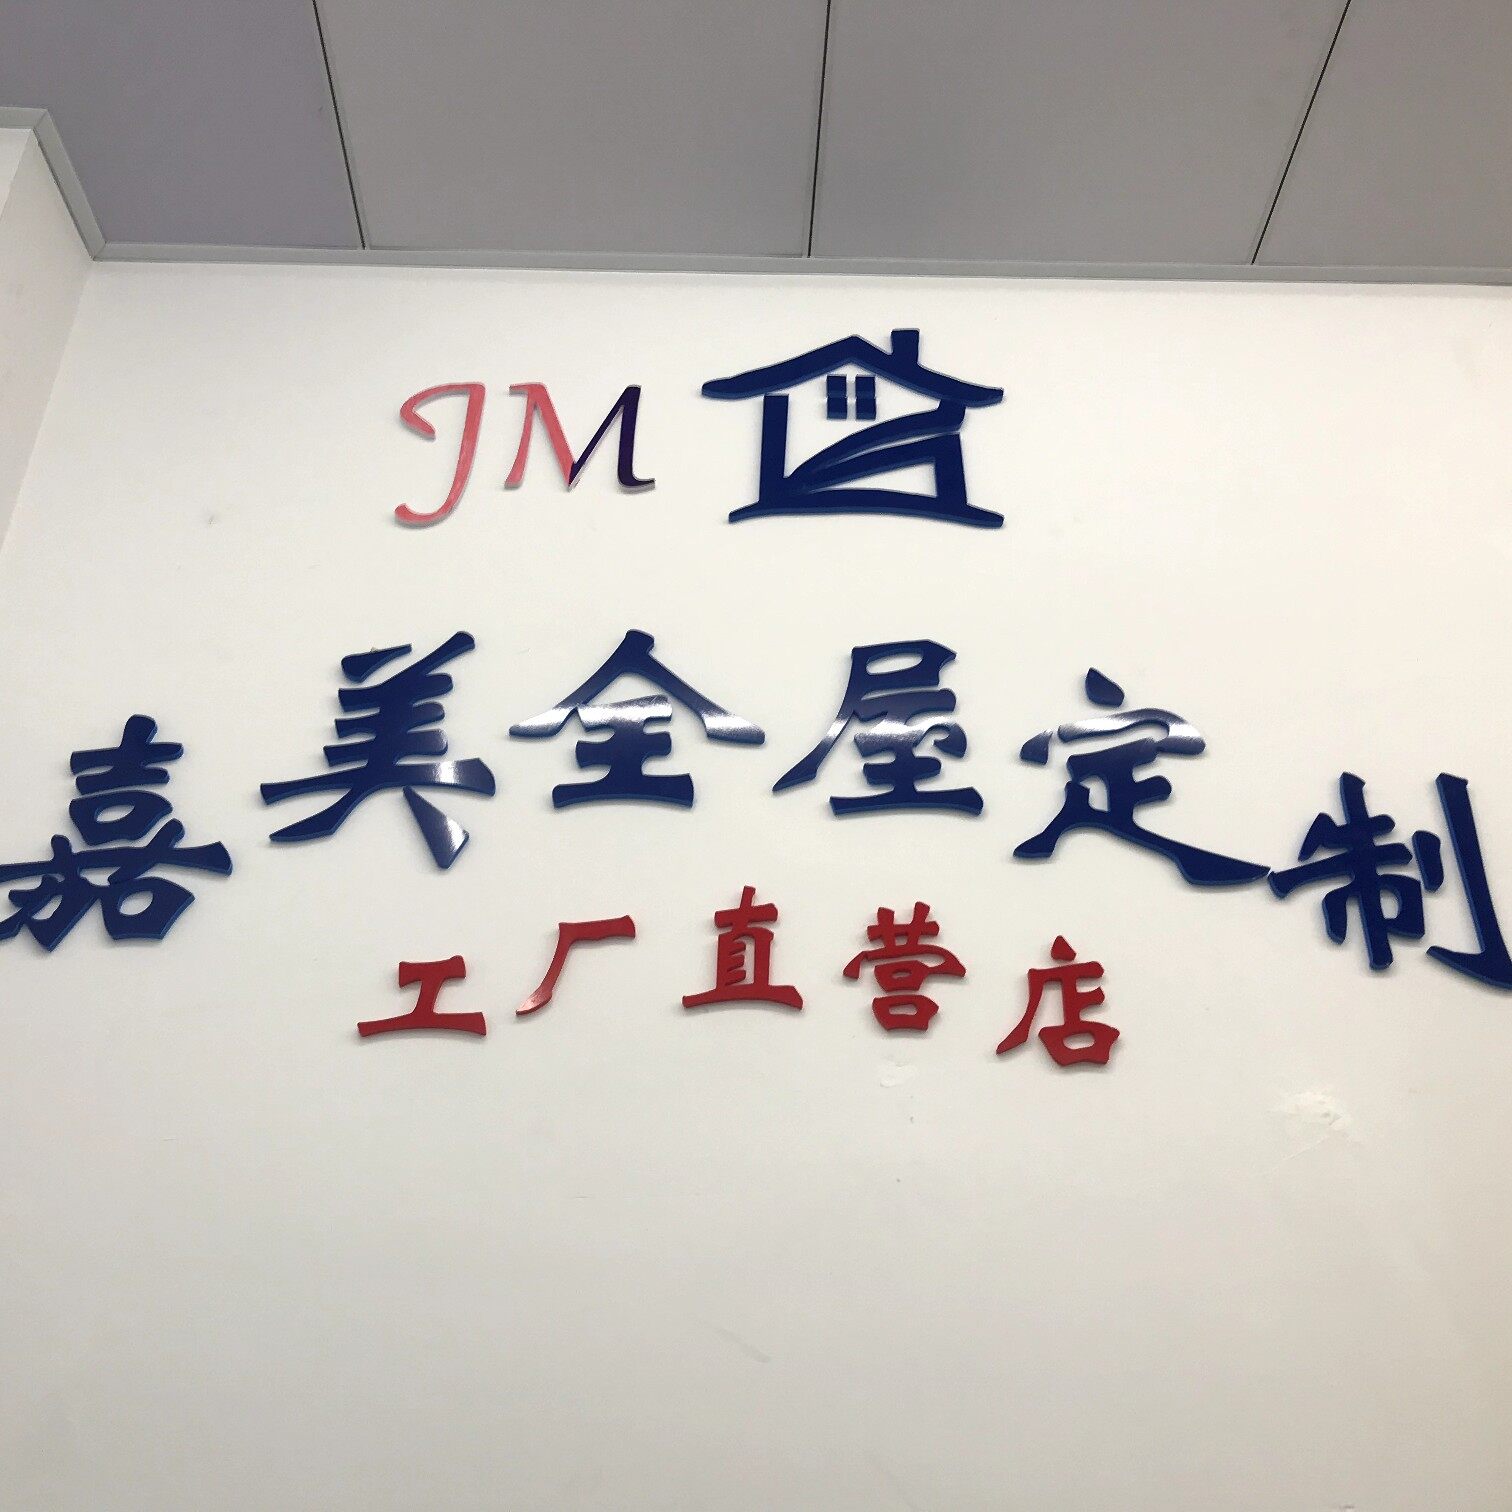 中山市嘉美厨柜店logo